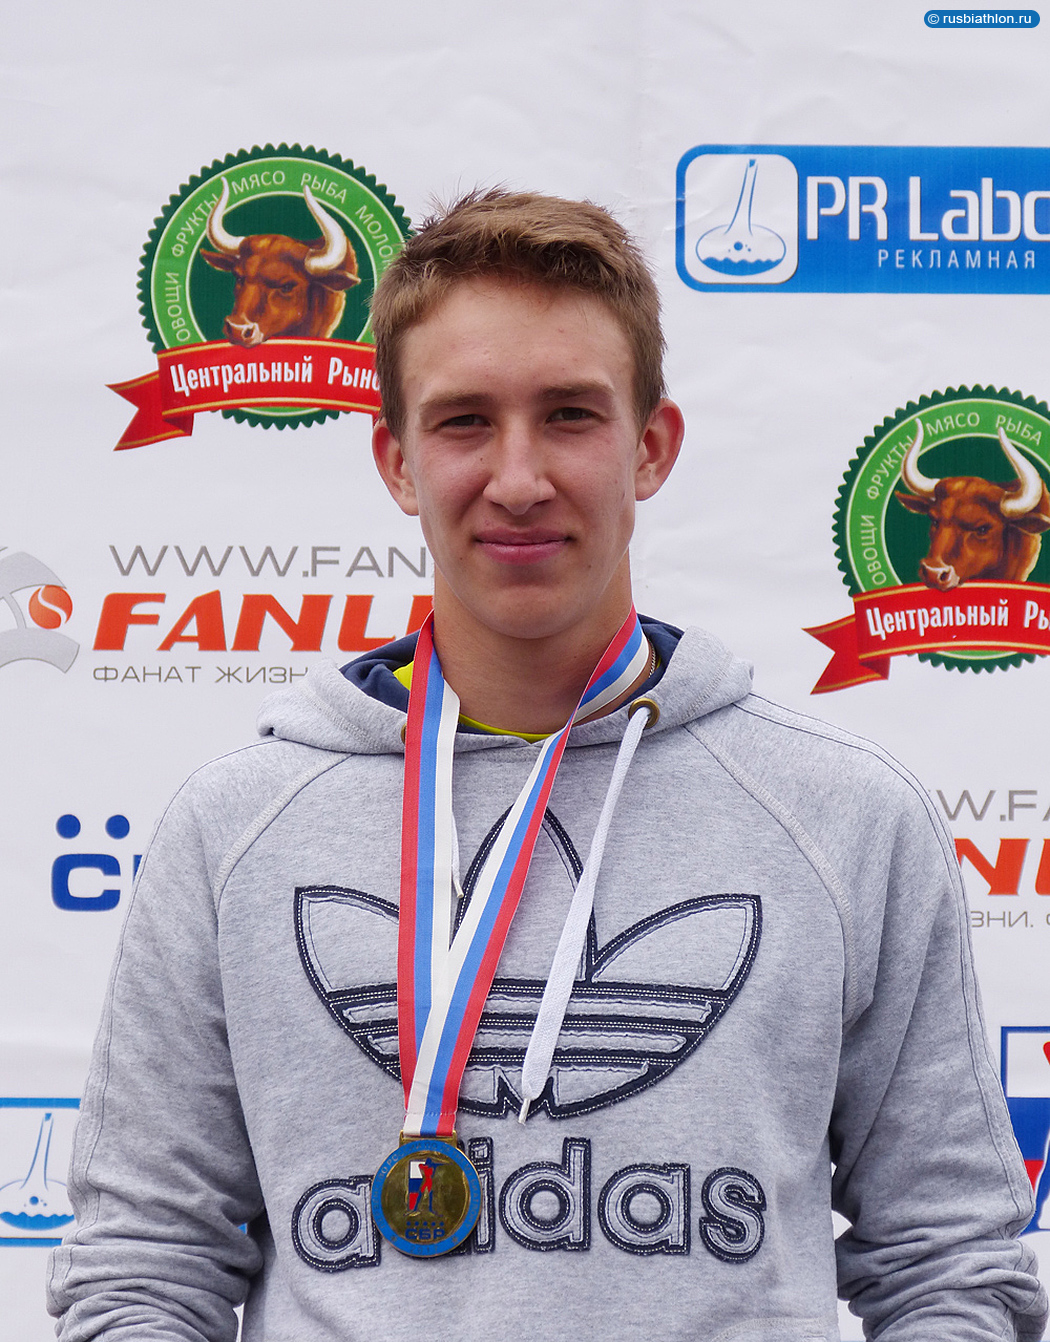 Иван Колотов выиграл юниорский спринт на отборочных соревнованиях к чемпионату мира по летнему биатлону